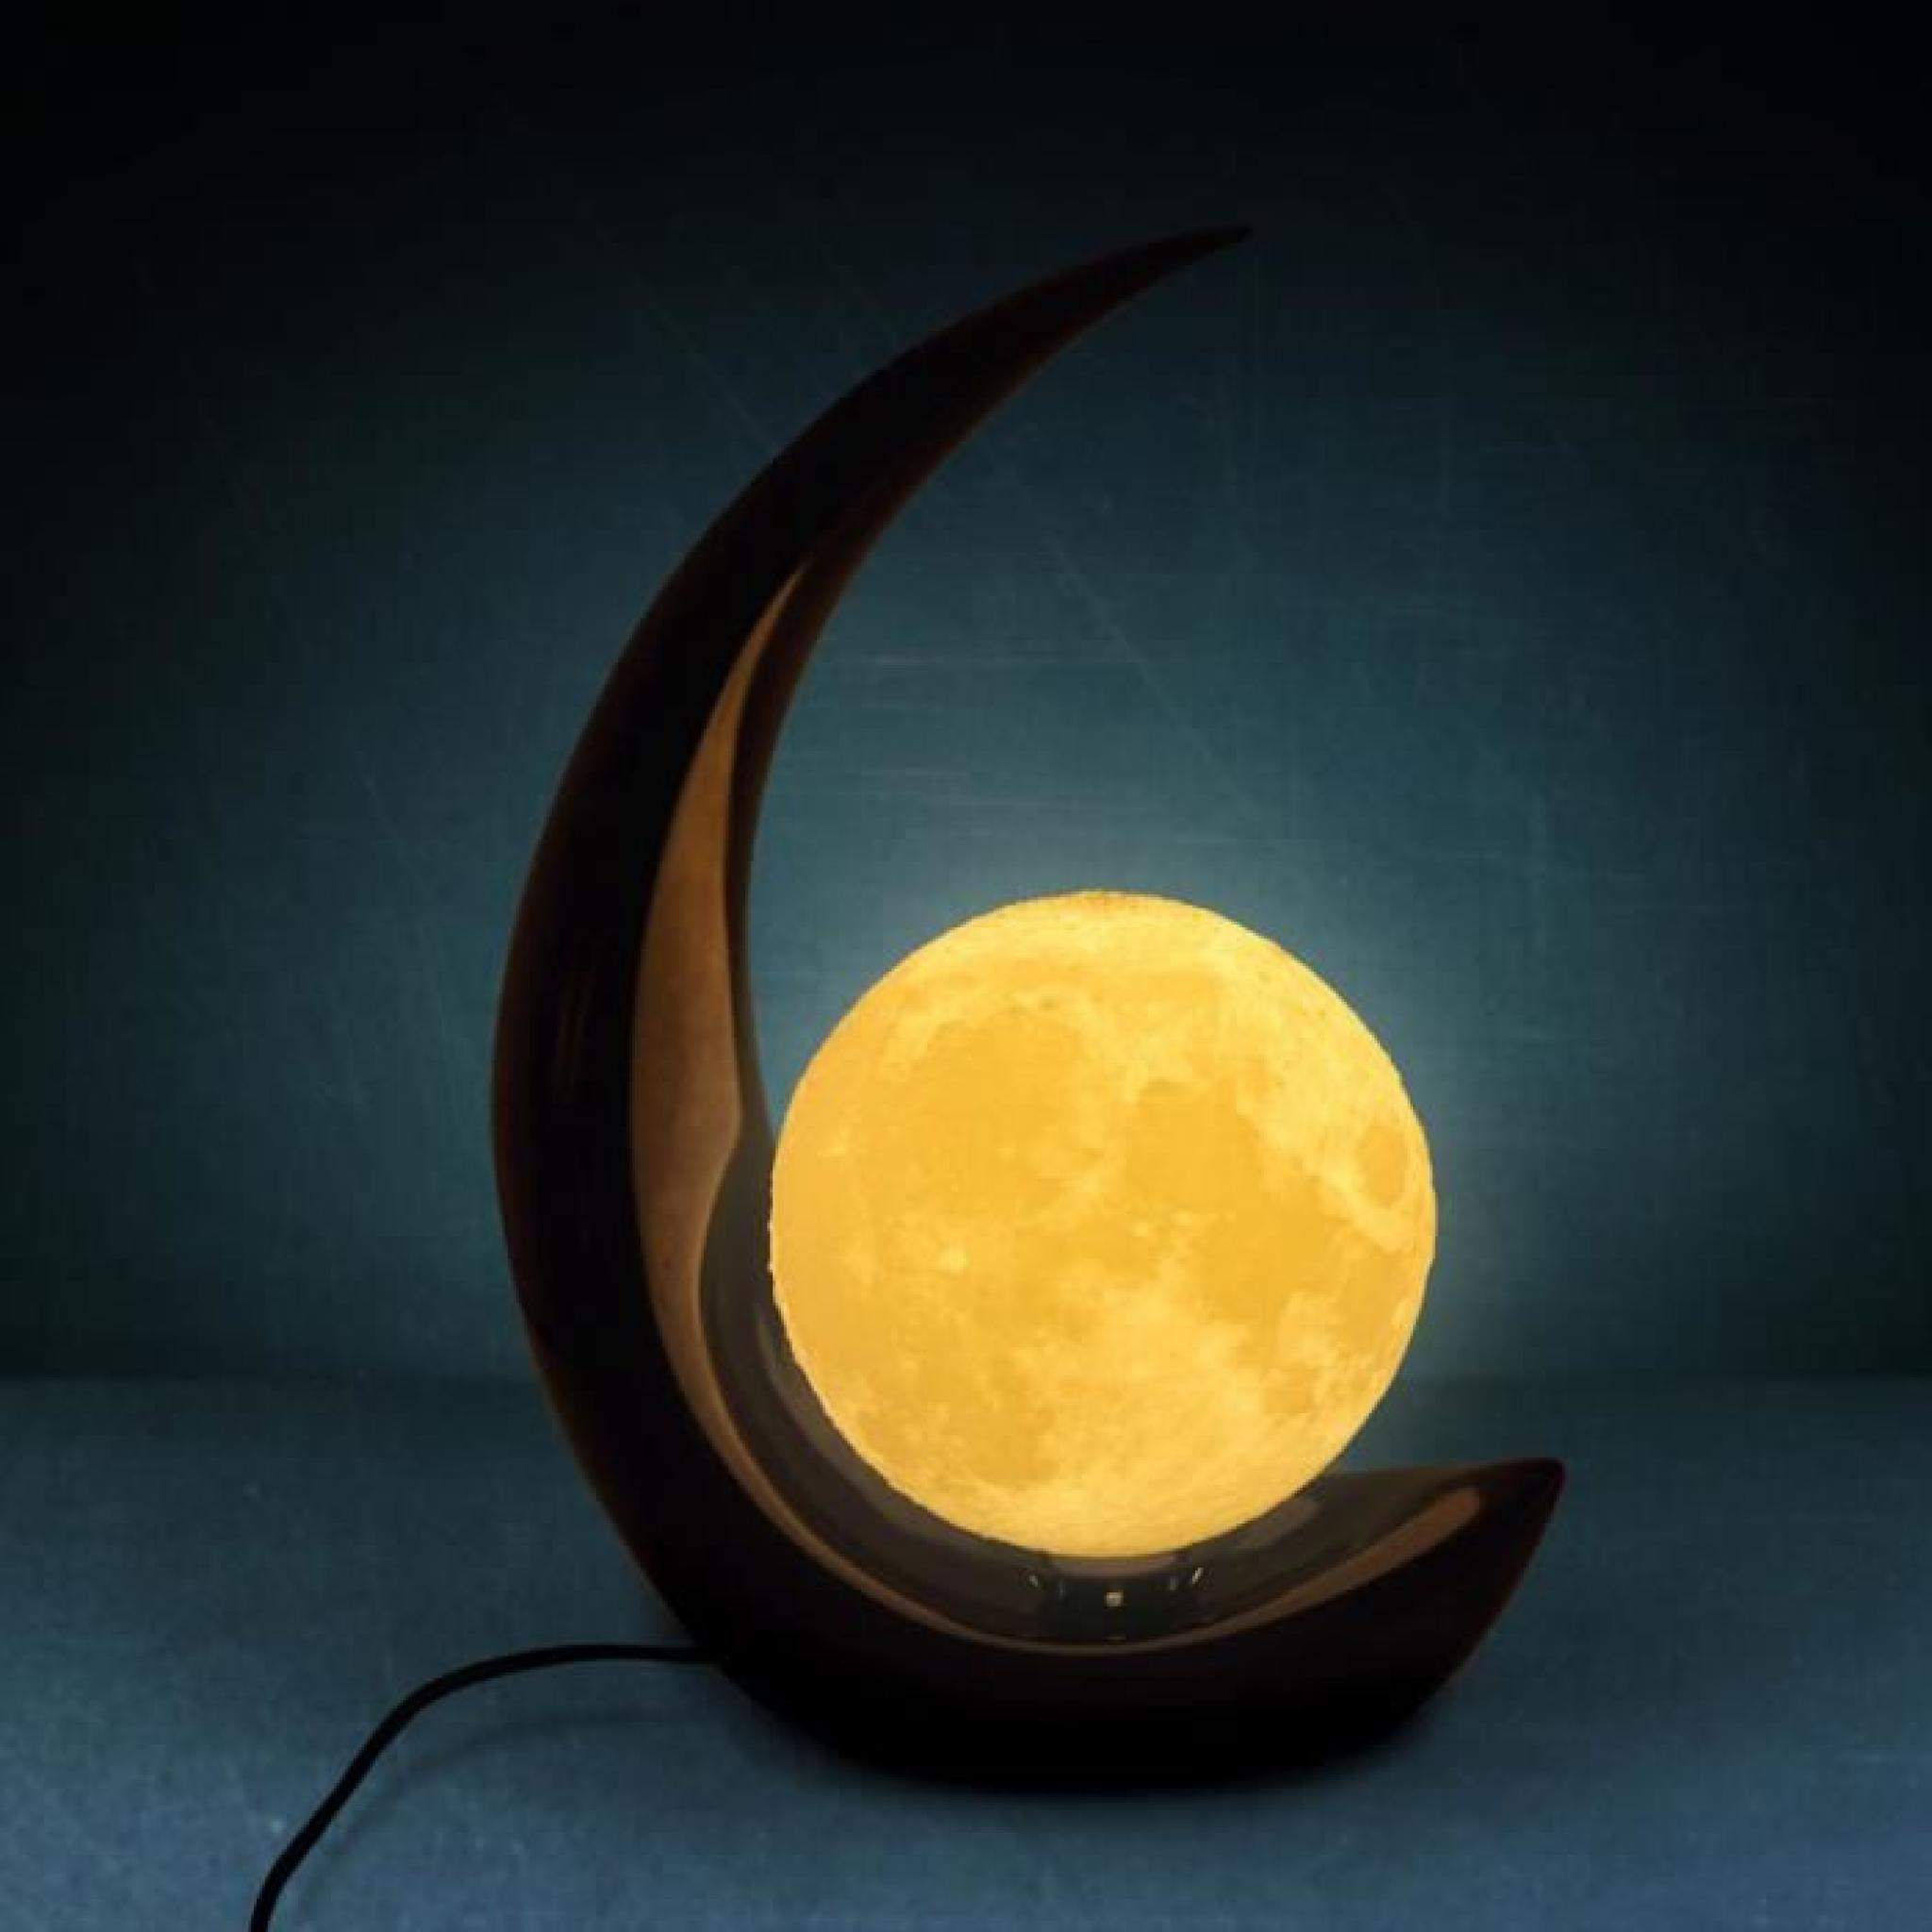 3D print TABLE LIGHT Lampe lunaire de création 3D de lampe d'une lampe à del de personnalisation